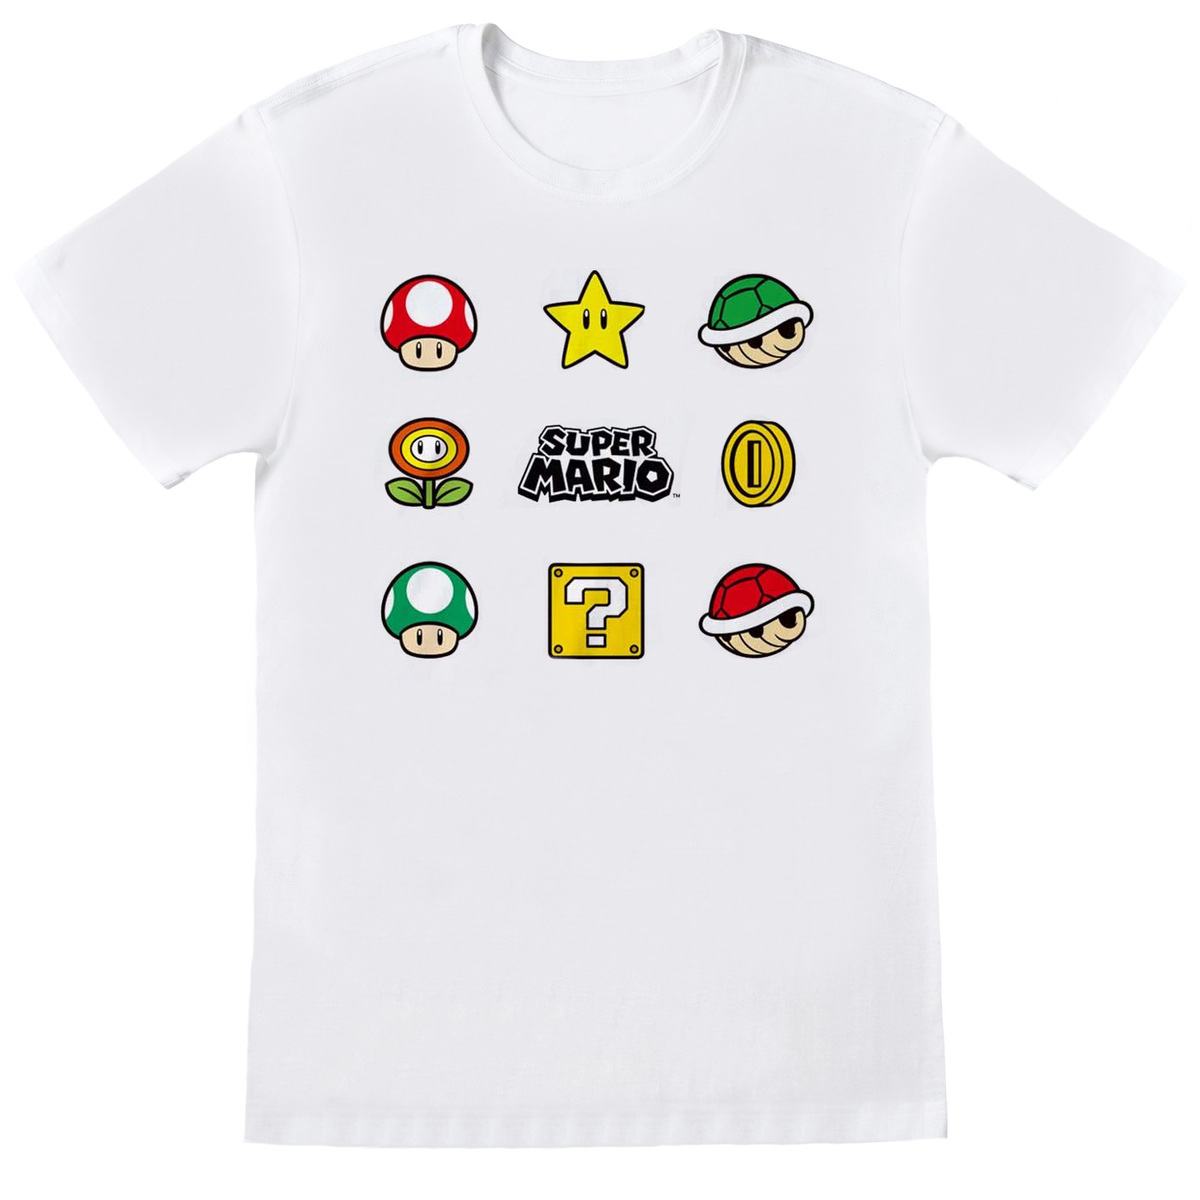 楽天市場 Nintendo オフィシャル商品 ユニセックス スーパーマリオ Tシャツ 半袖 トップス 楽天海外直送 Pertemba Japan